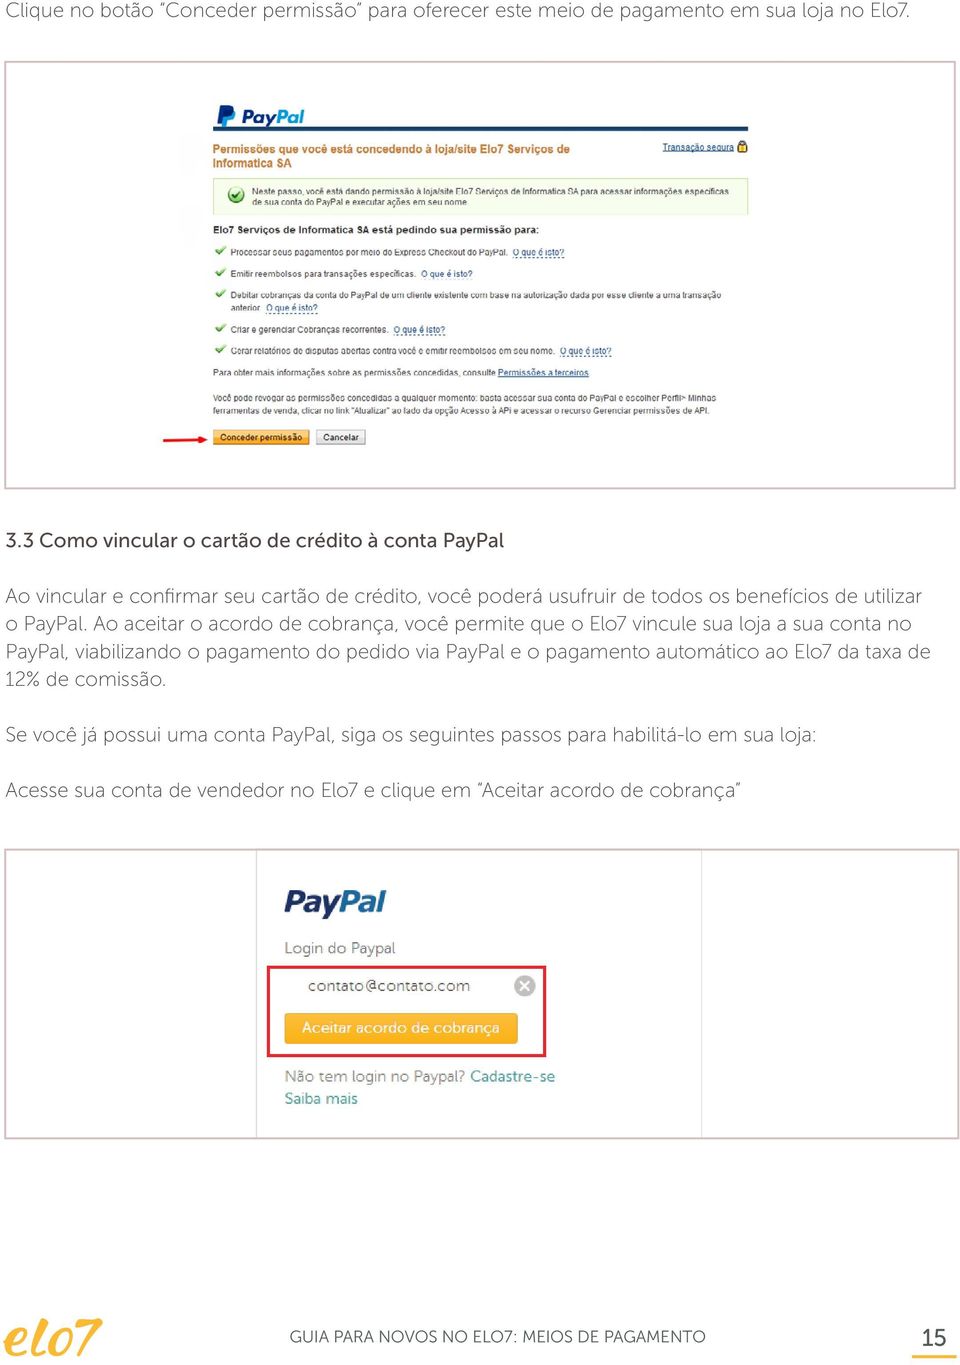 Ao aceitar o acordo de cobrança, você permite que o Elo7 vincule sua loja a sua conta no PayPal, viabilizando o pagamento do pedido via PayPal e o pagamento automático